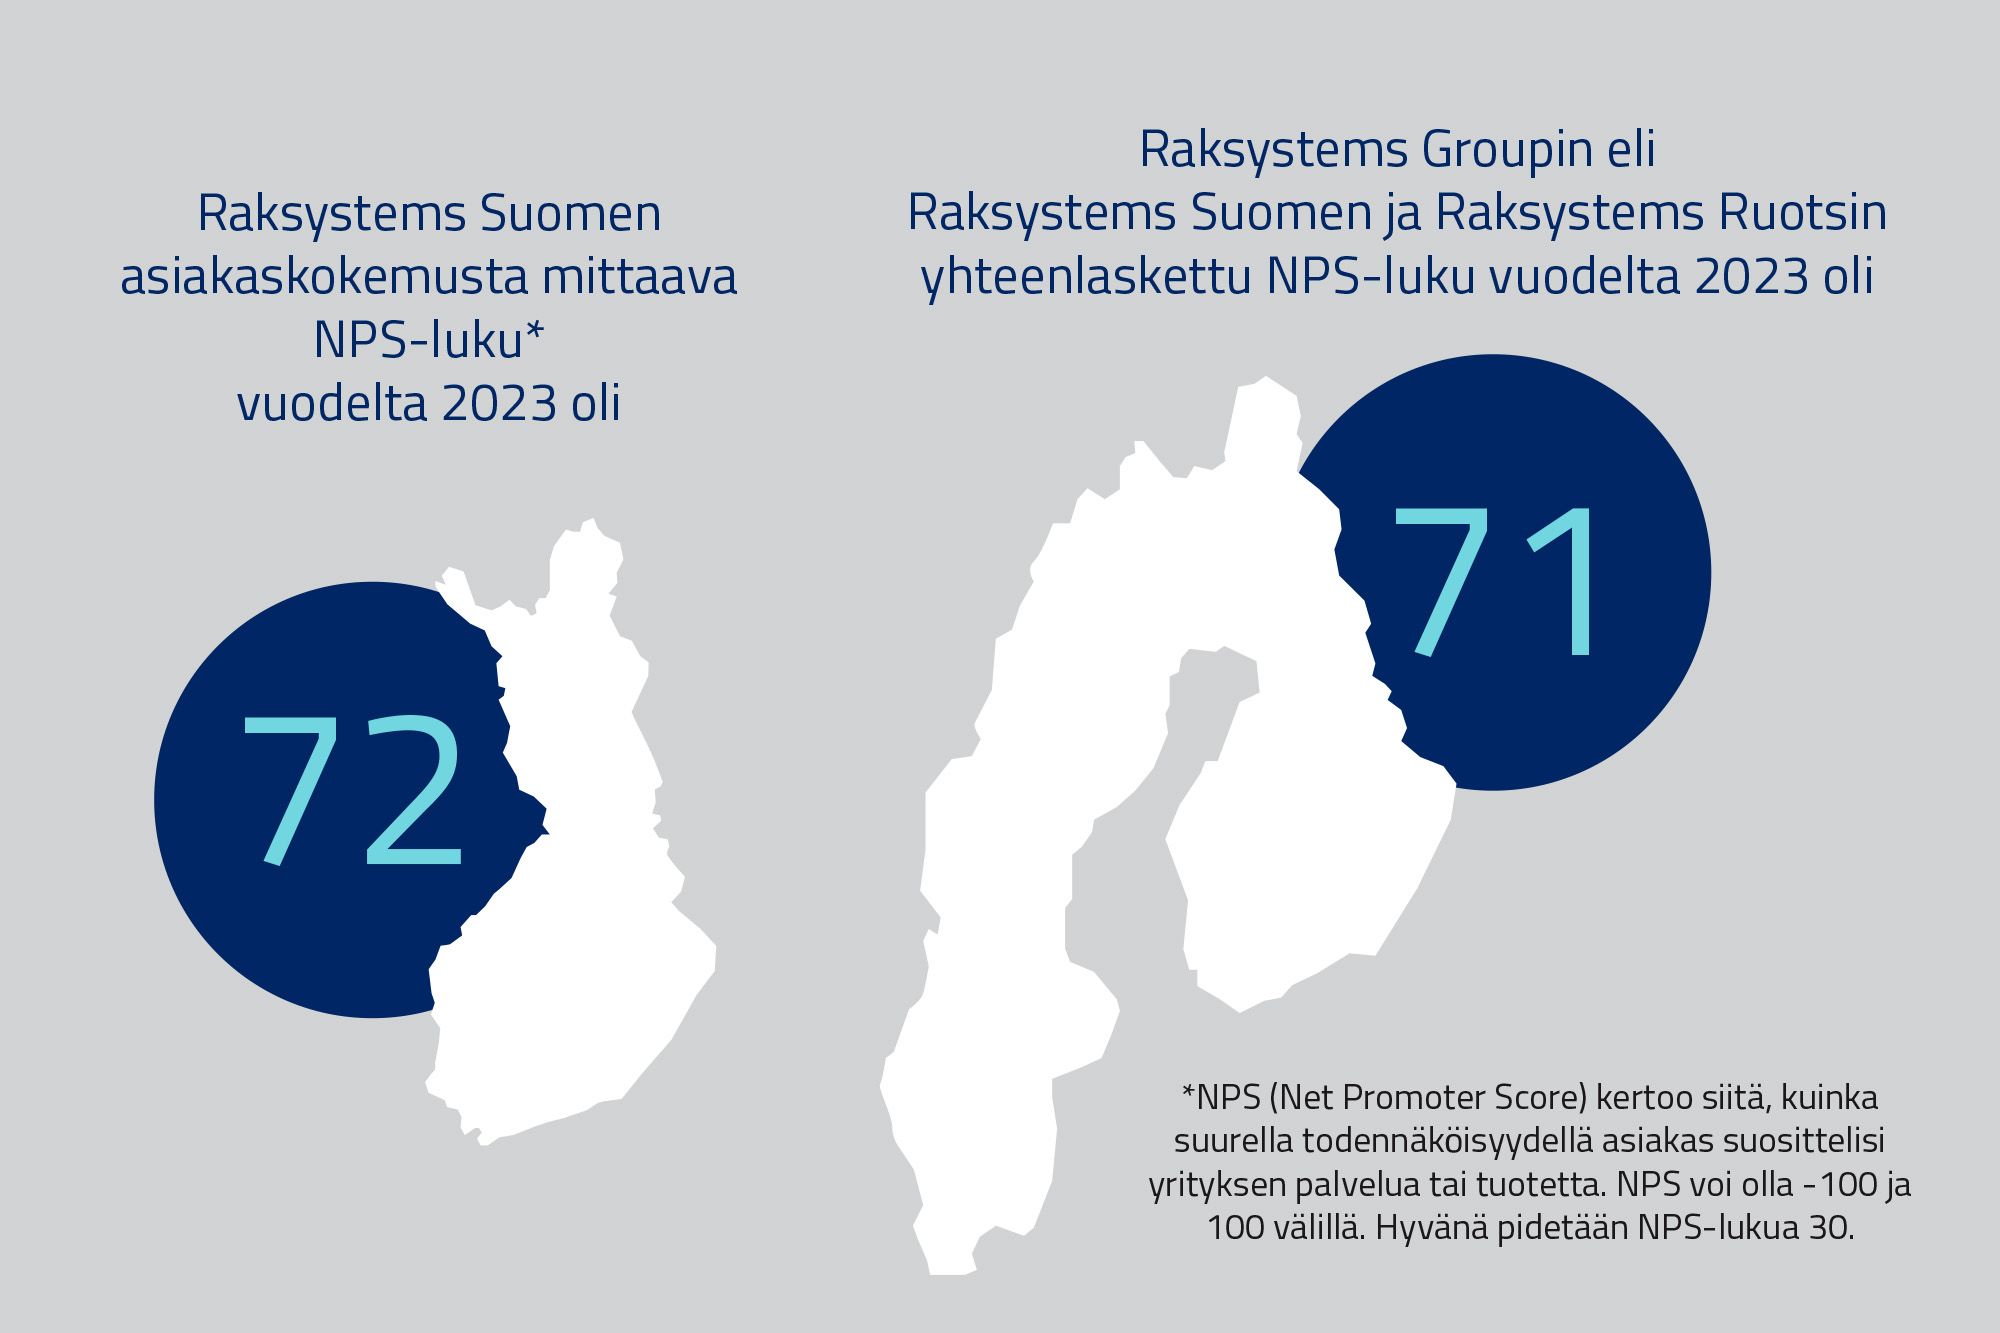 Raksystems Groupin NPS-luku vuodelta 2023 oli 71 ja Raksystems Suomen 72. Kuvan kartoissa näkyy, että groupin toimialue on Suomi ja Ruotsi.